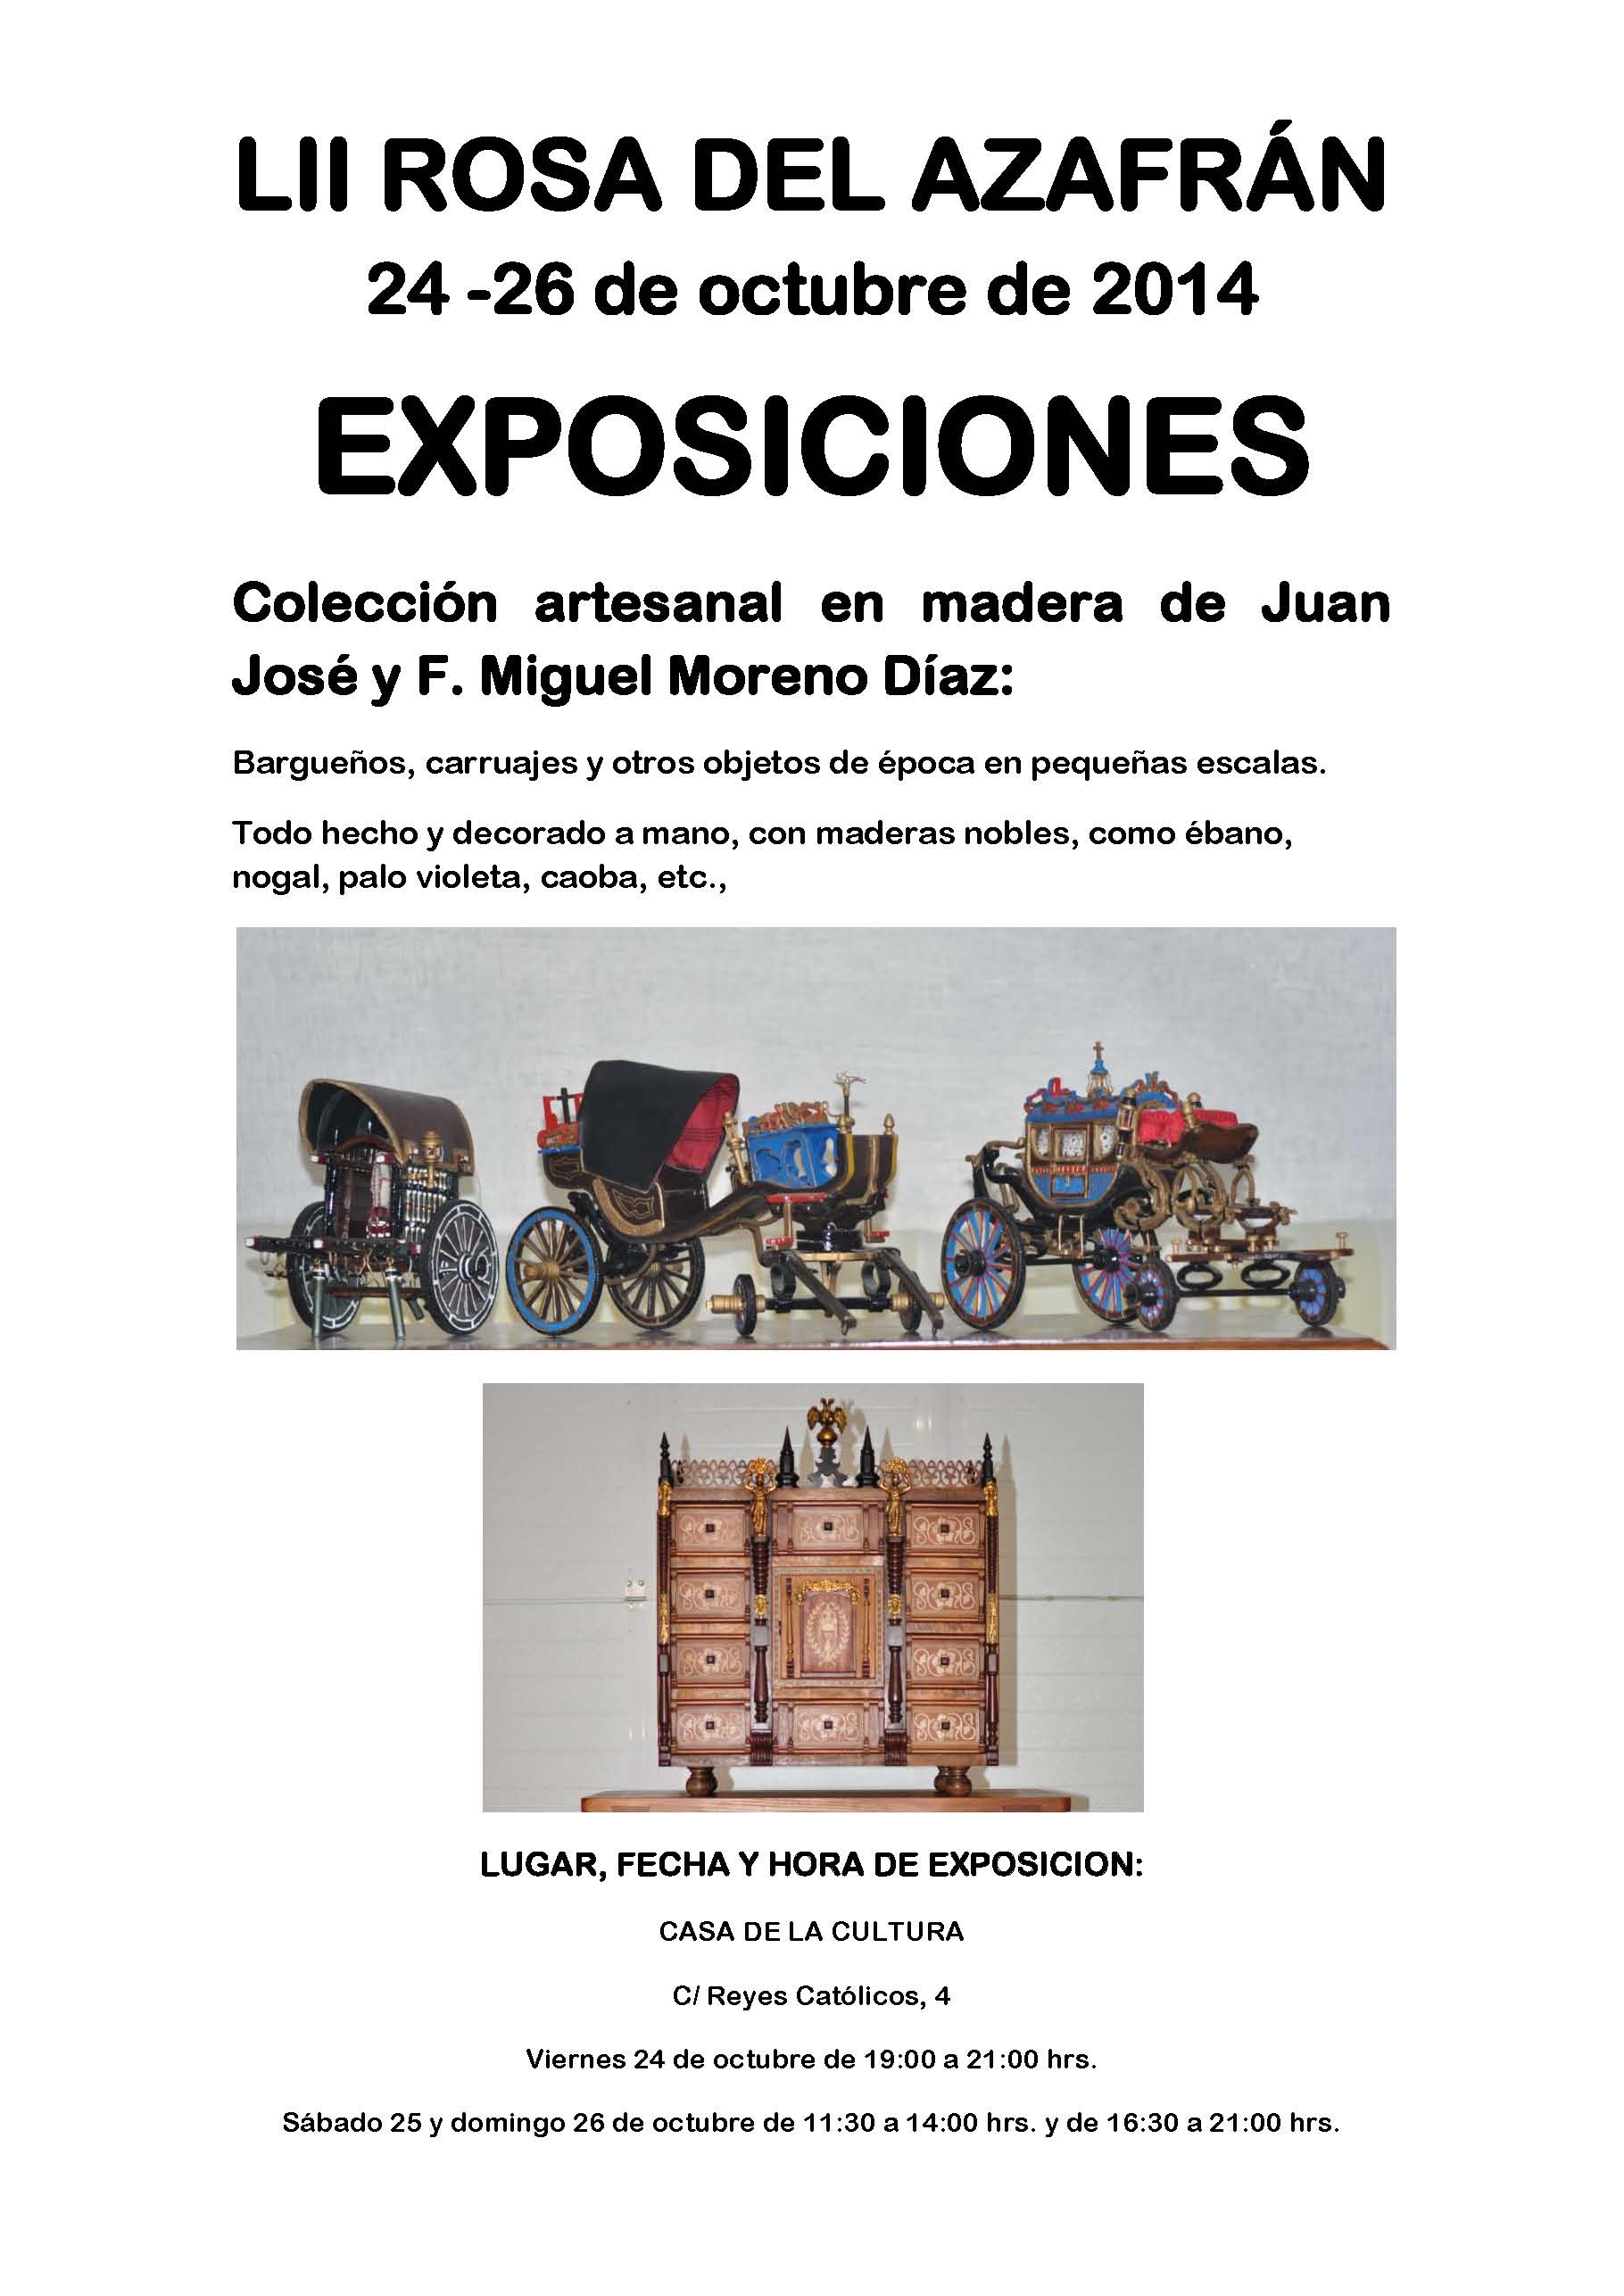 cartel-expo-rosa2014-artesanos-madera-casa-cultura.jpg - 266.18 KB